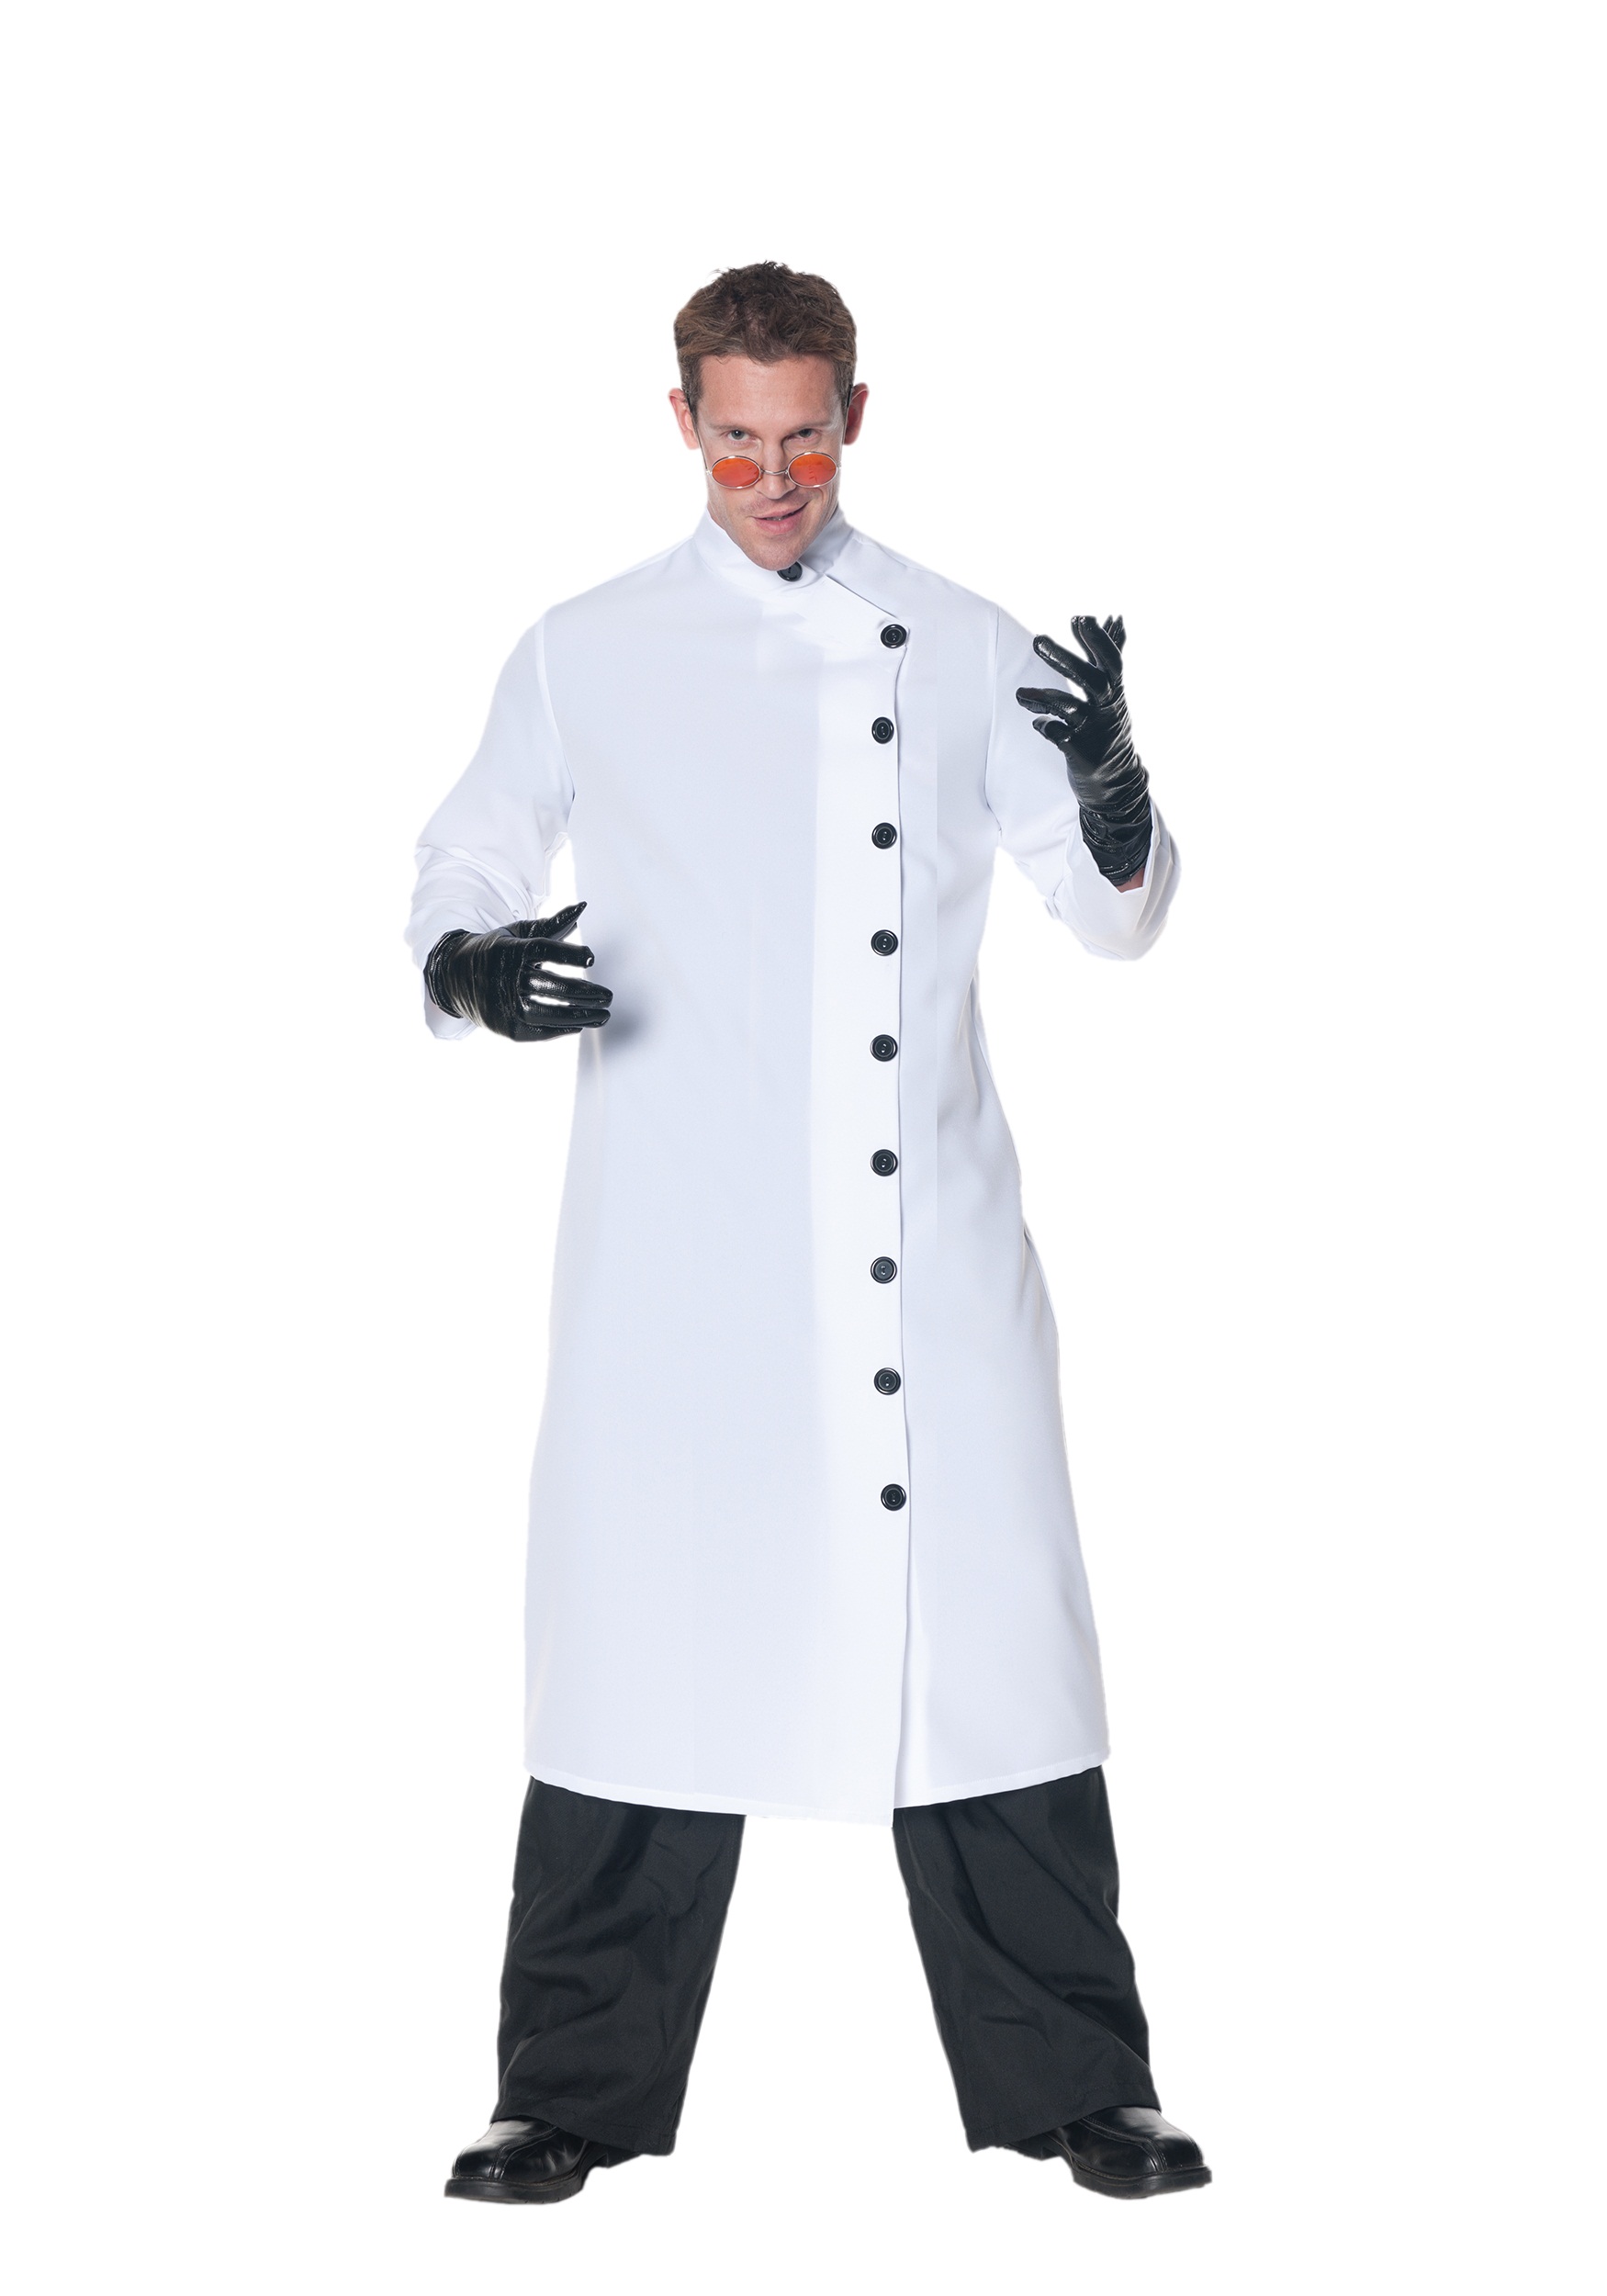 Mad Scientist Costume for Men